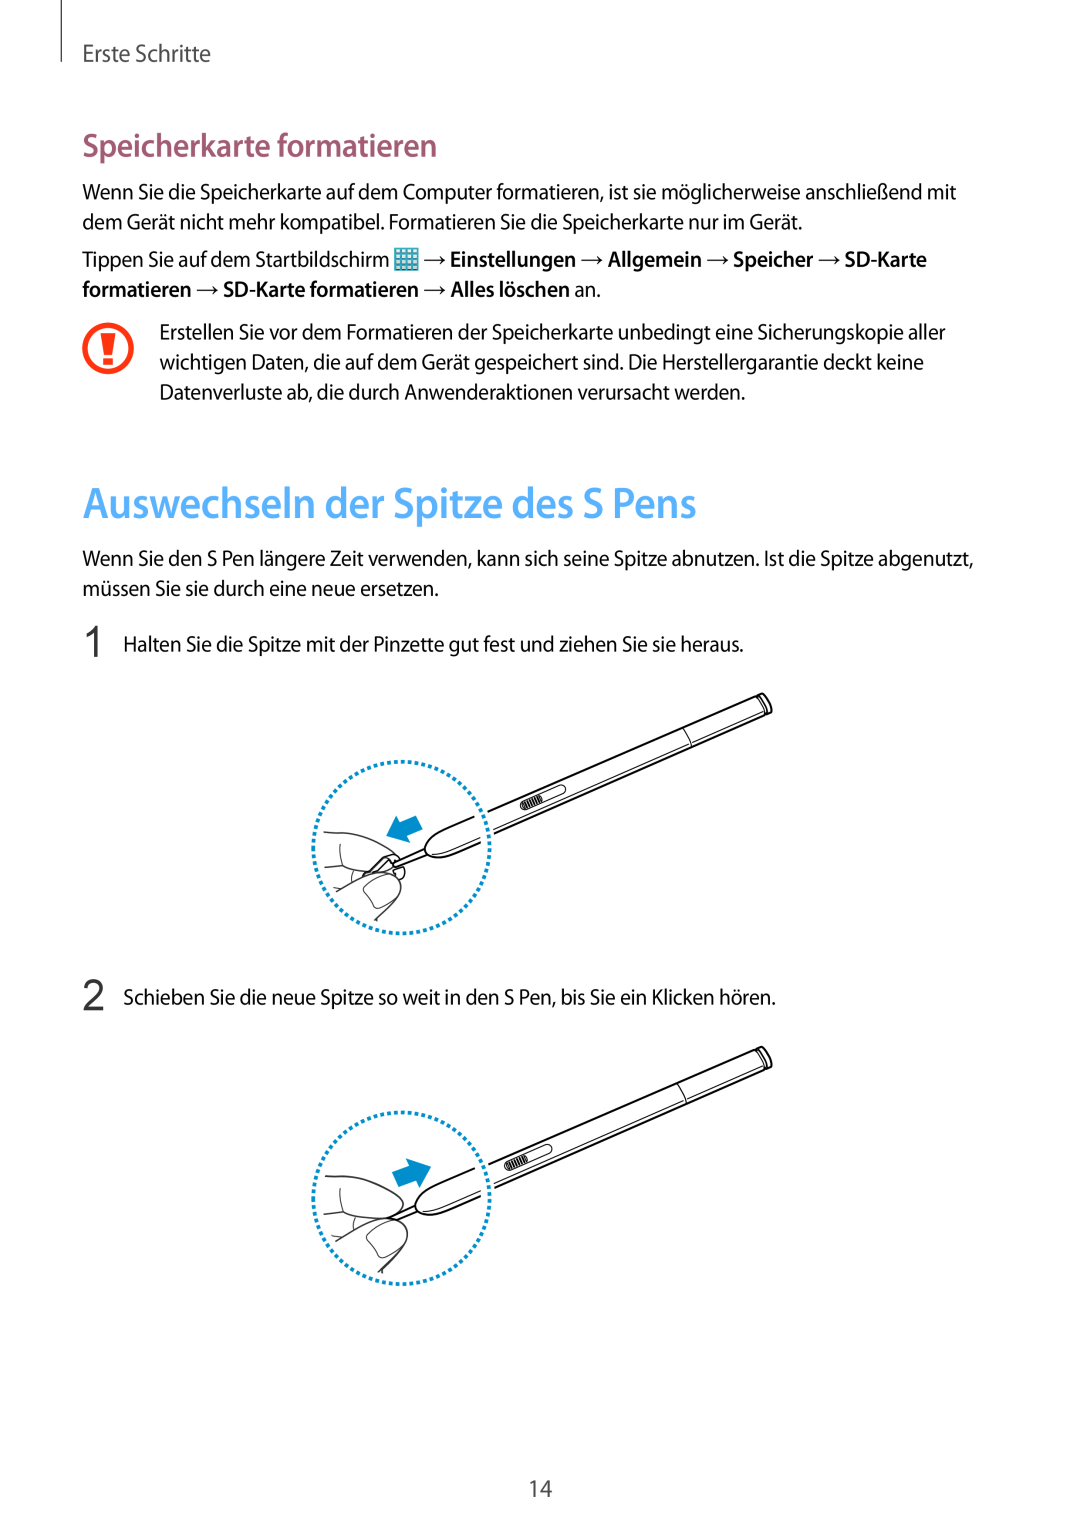 Samsung SM-P9000ZKAXEO, SM-P9000ZWAATO manual Auswechseln der Spitze des S Pens, Speicherkarte formatieren, Erste Schritte 